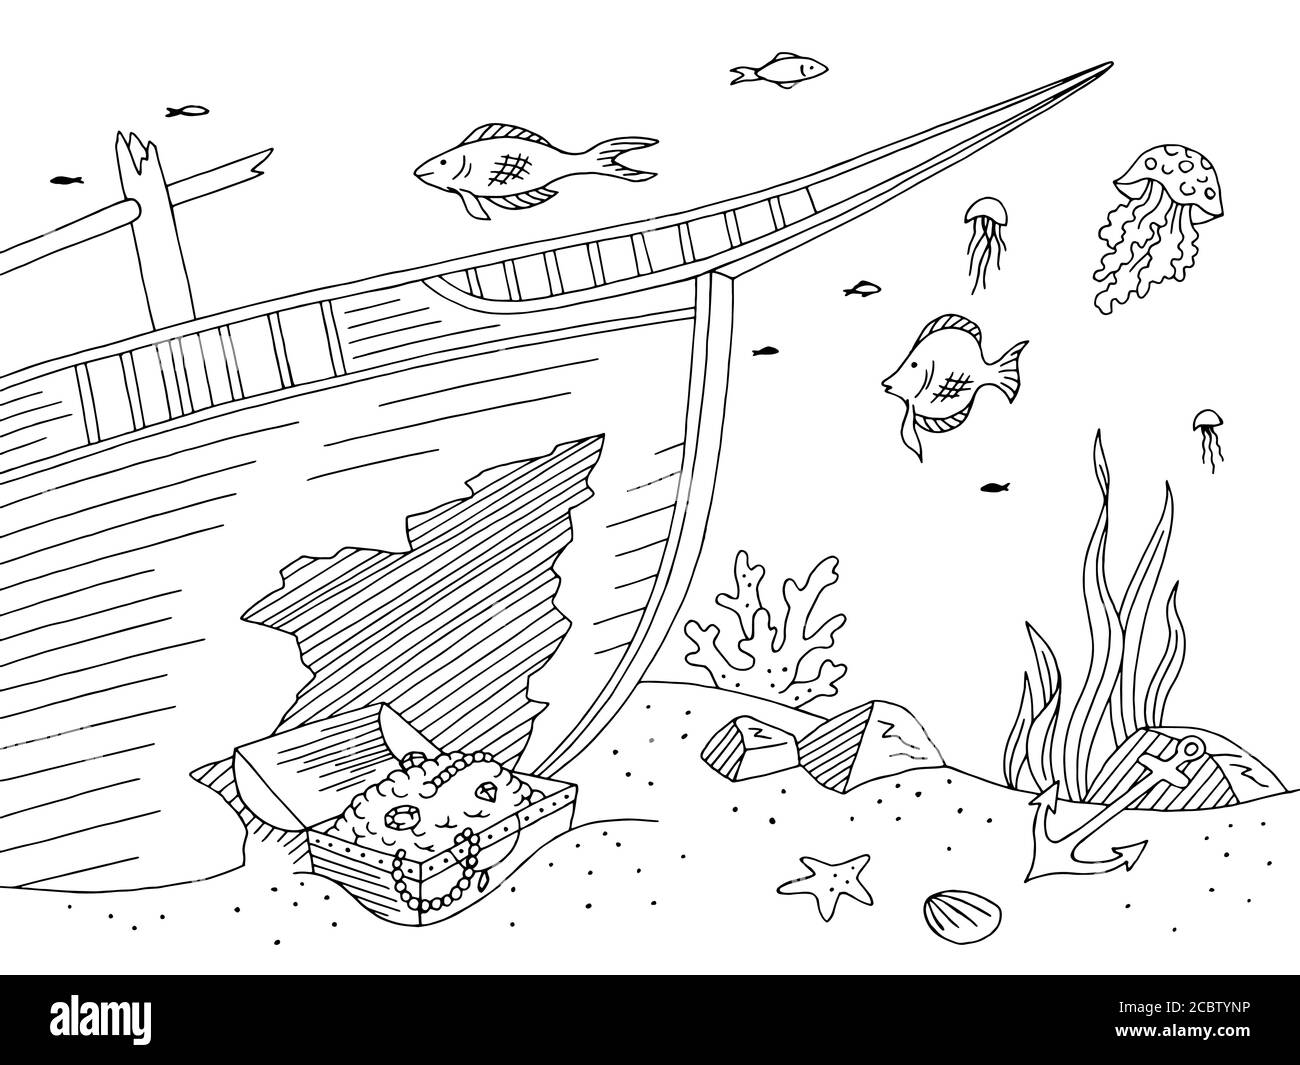 Unterwasser Grafik Meer gebrochen Schiff schwarz weiß Skizze Illustration Vektor Stock Vektor